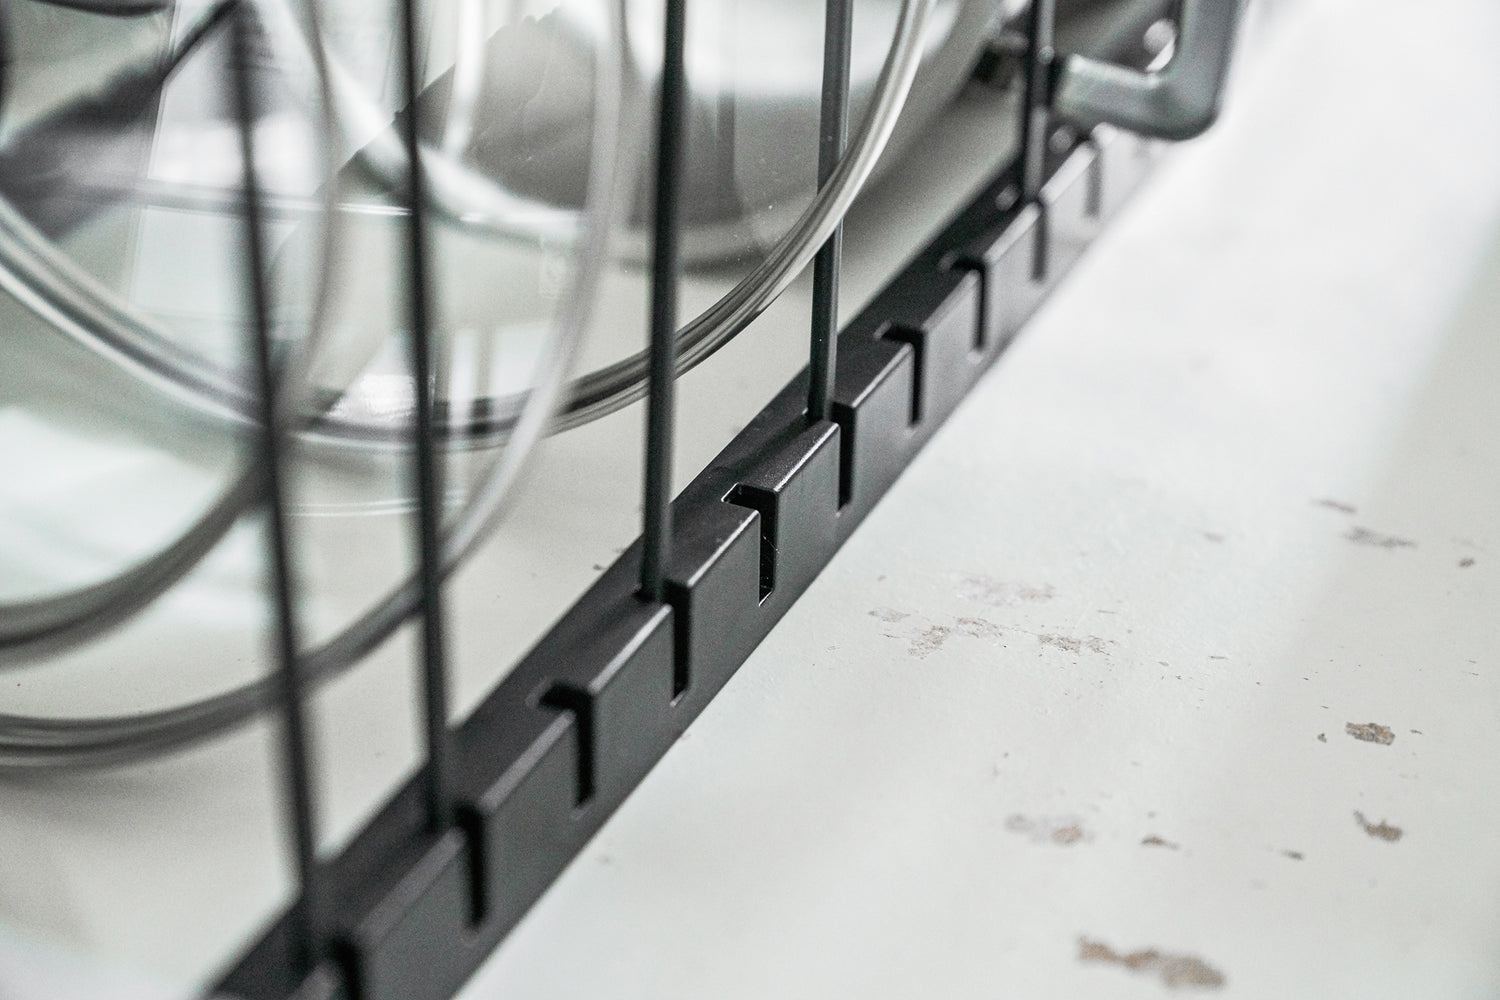 View 16 - Close up of white Slim Dish Rack holding silverware by Yamazaki Home.